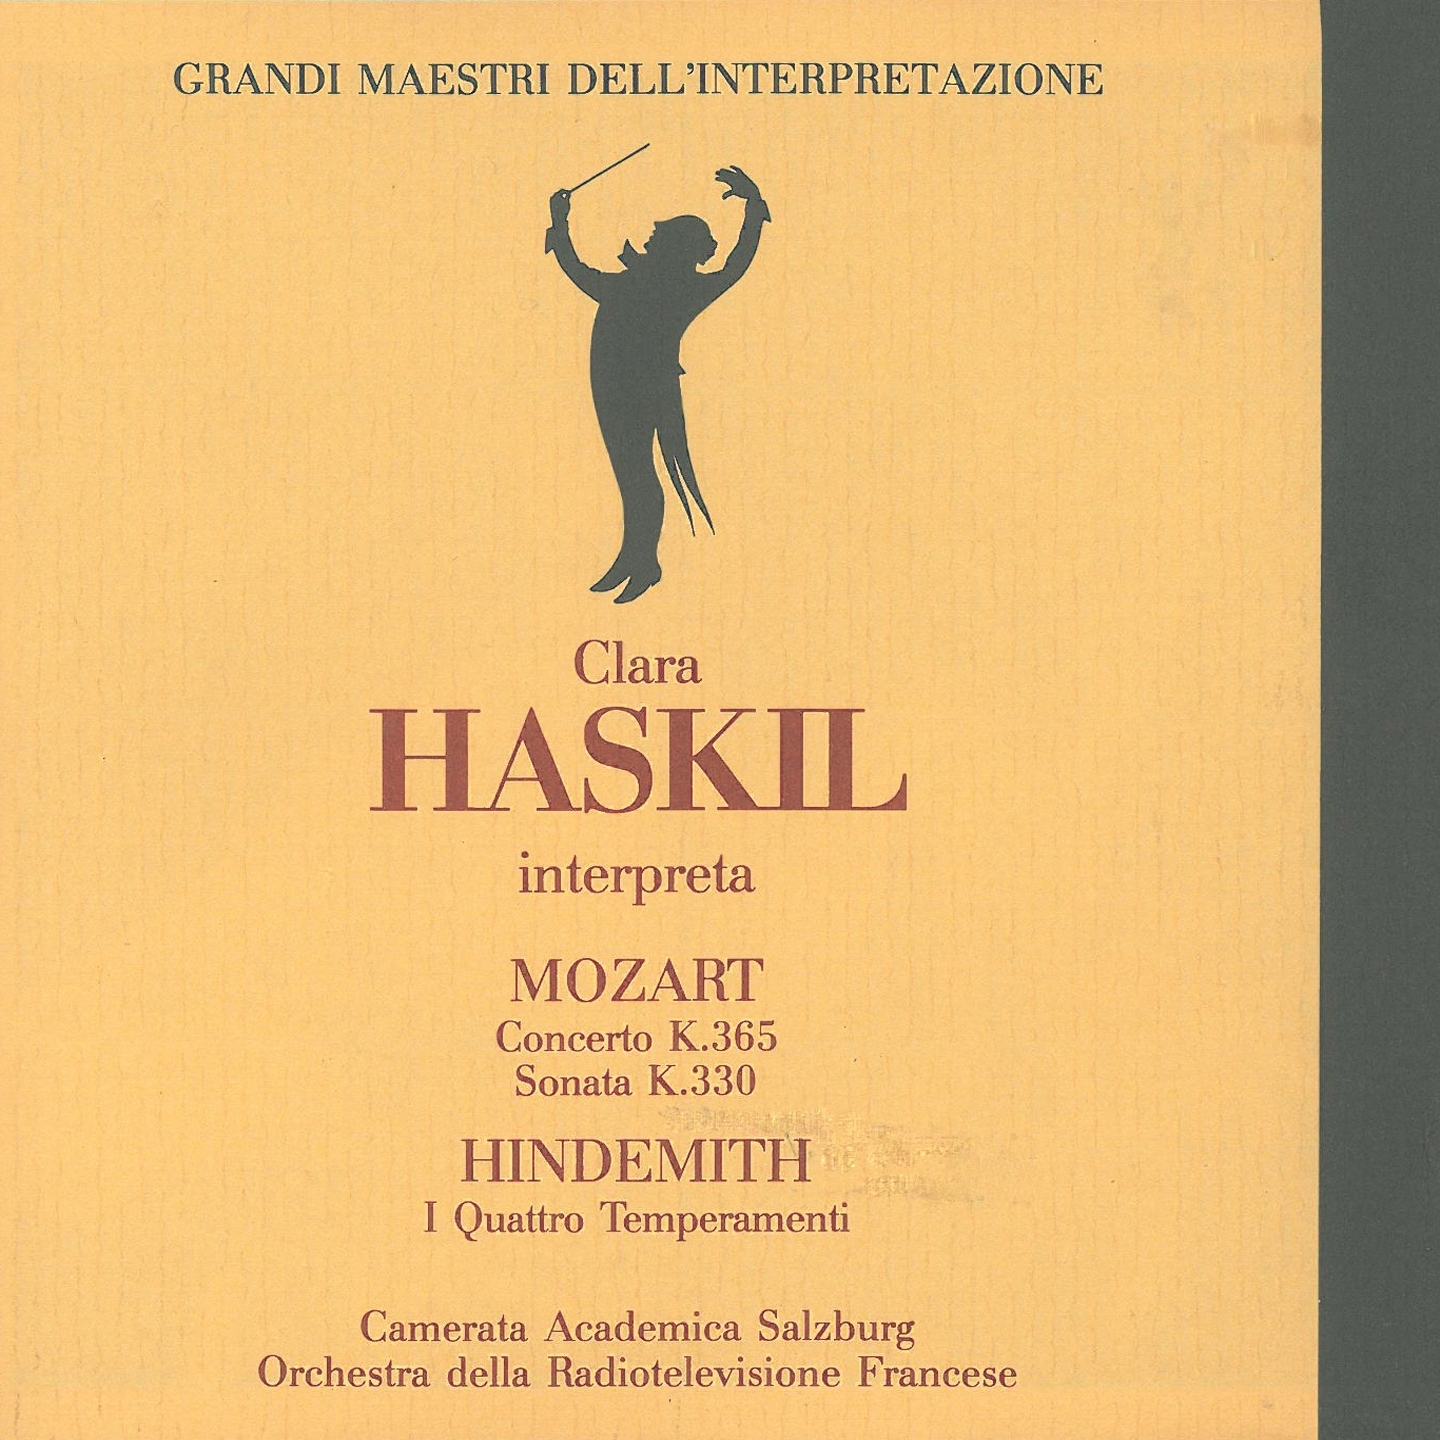 Grandi maestri dell'interpretazione: Clara Haskil interpreta Mozart & Hindemith